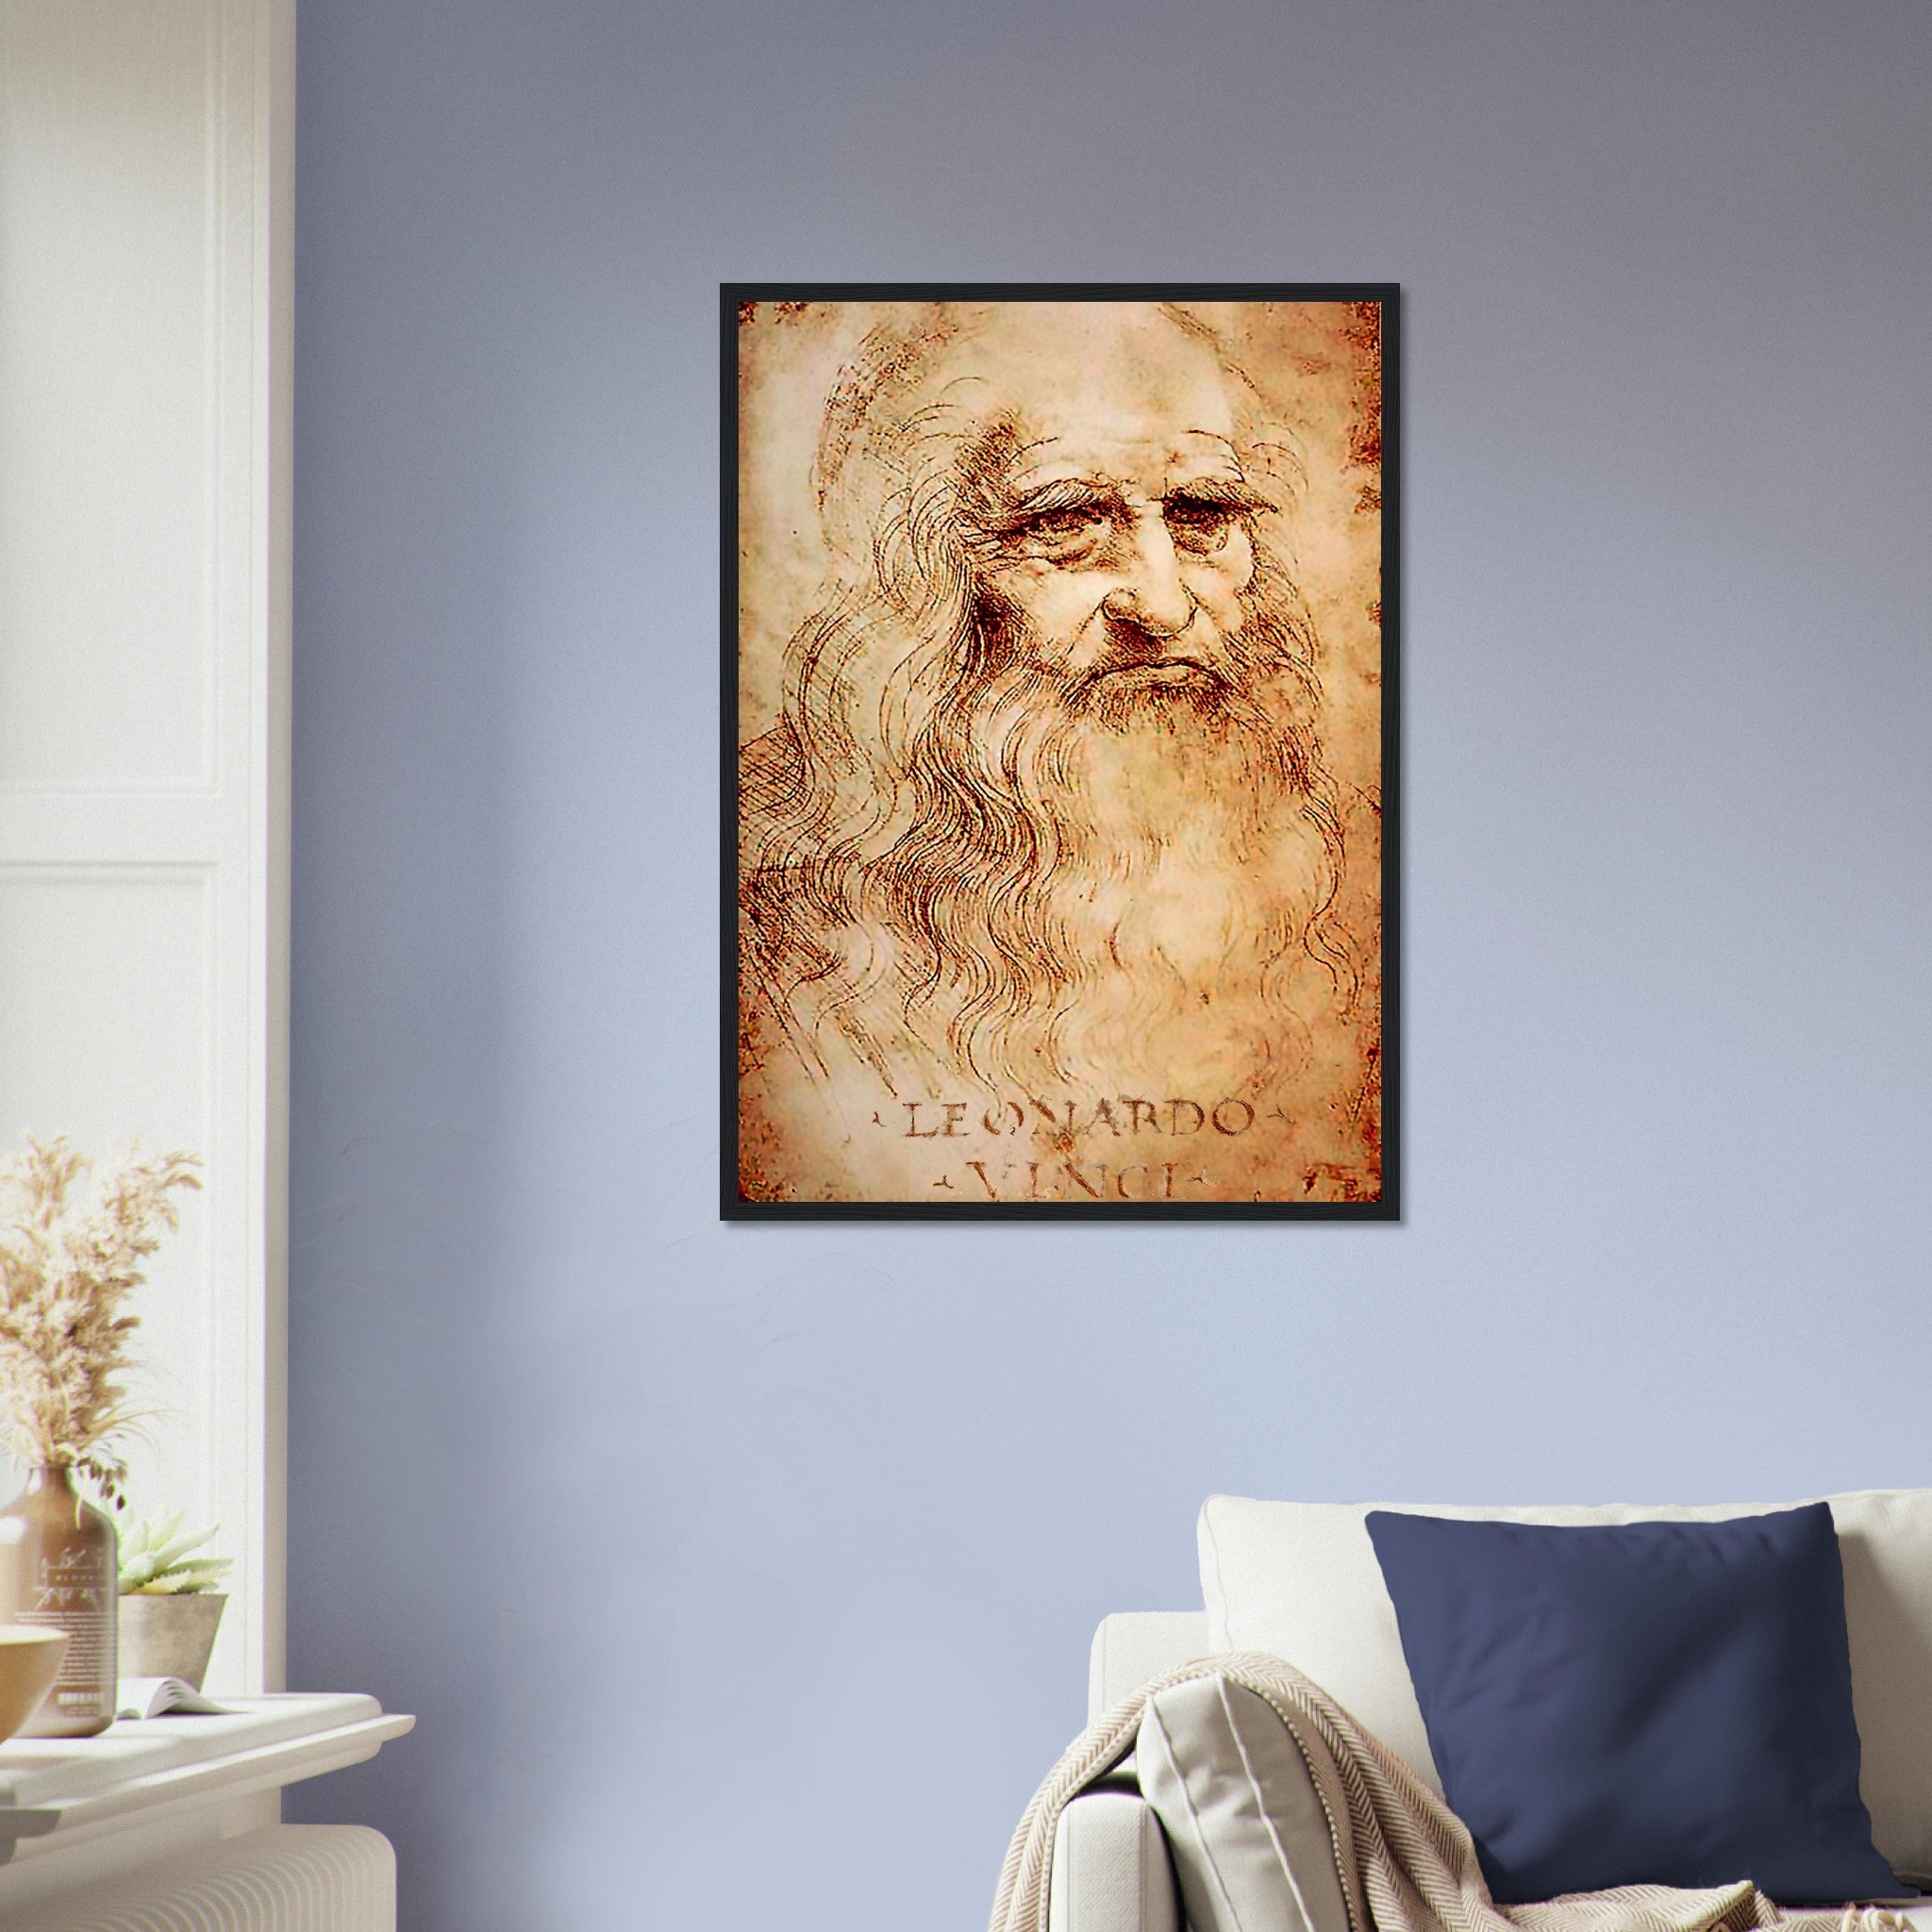 Leonardo Da Vinci Framed, Self Portrait - Iconic Leonardo Da Vinci Framed Print - Historical Genius - WallArtPrints4U